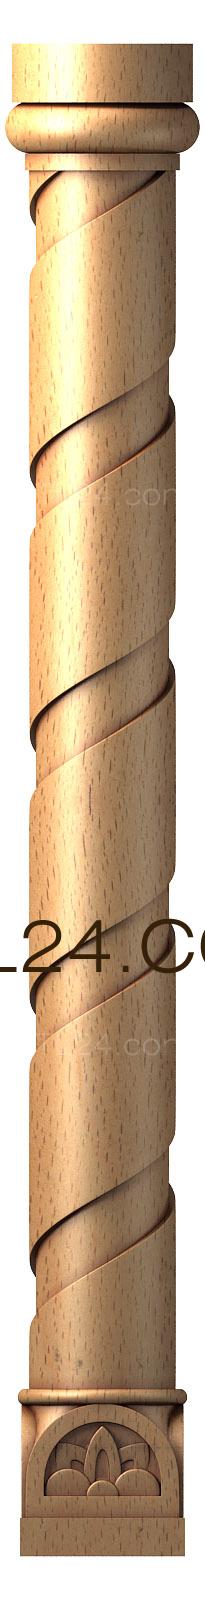 Колонны (3d stl модель колонны витой, файл для ЧПУ станка, KL_0028) 3D модель для ЧПУ станка